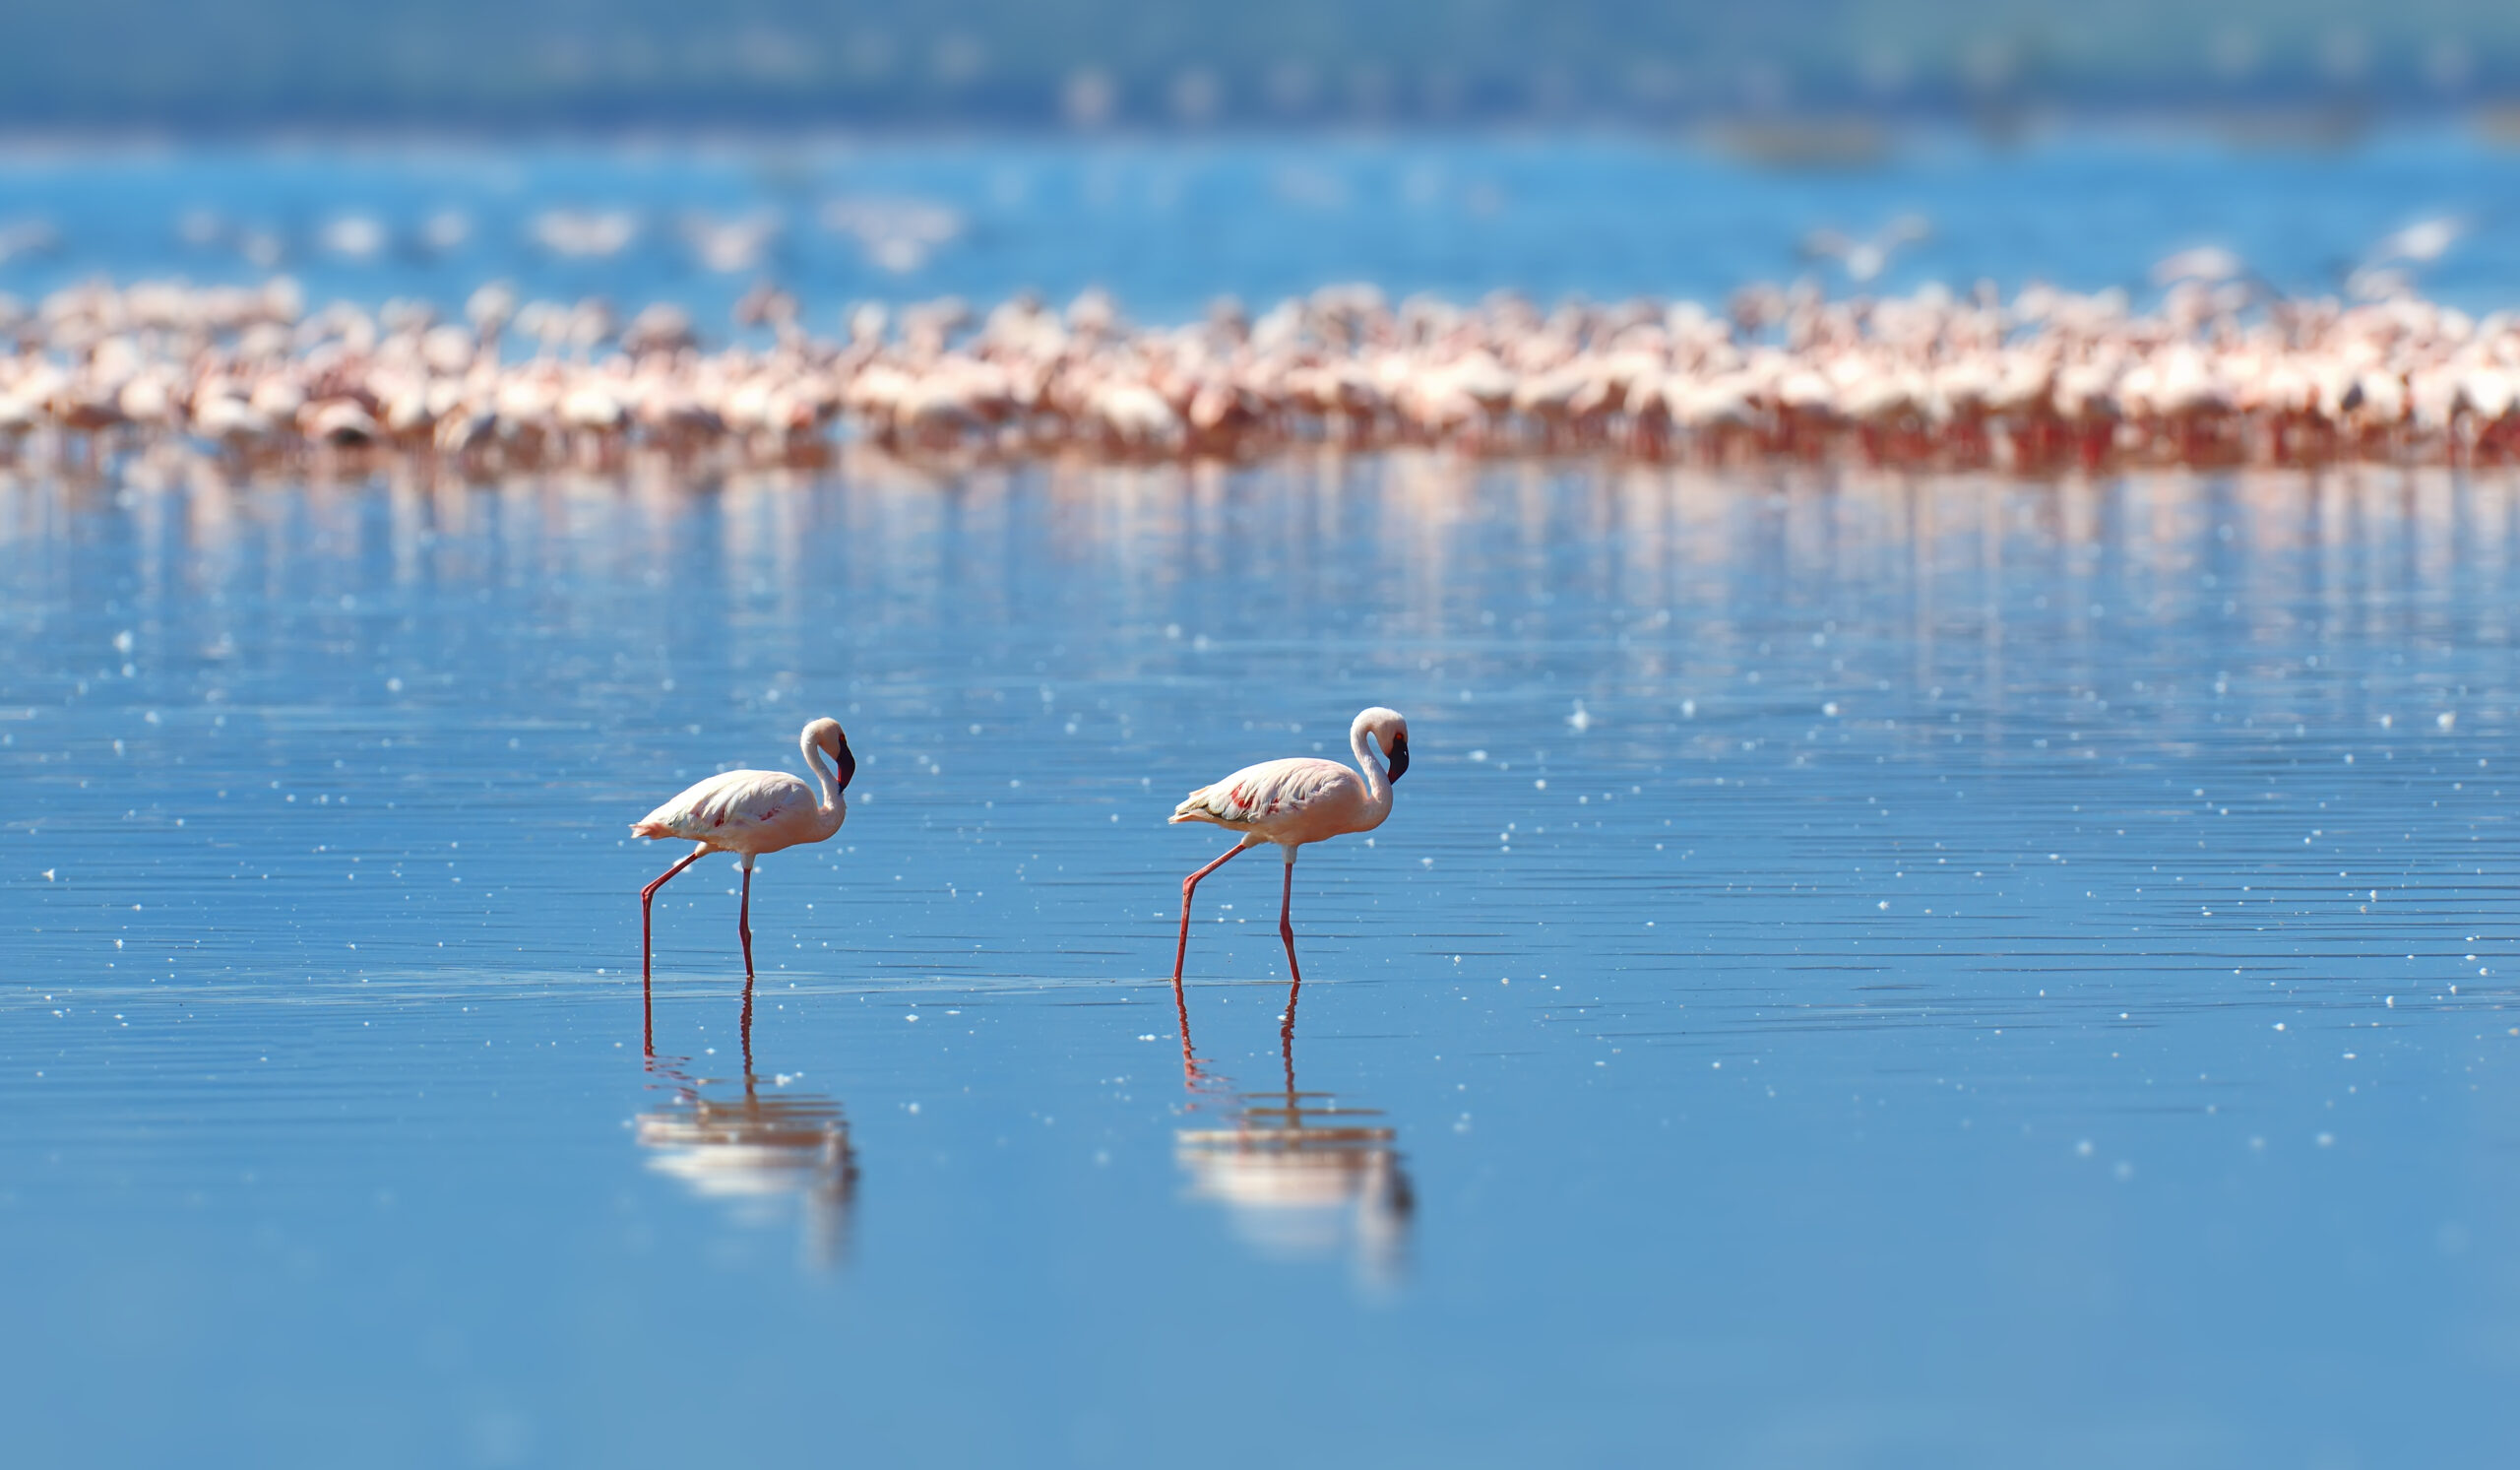 Flamingos on lake. Kenya, Africa